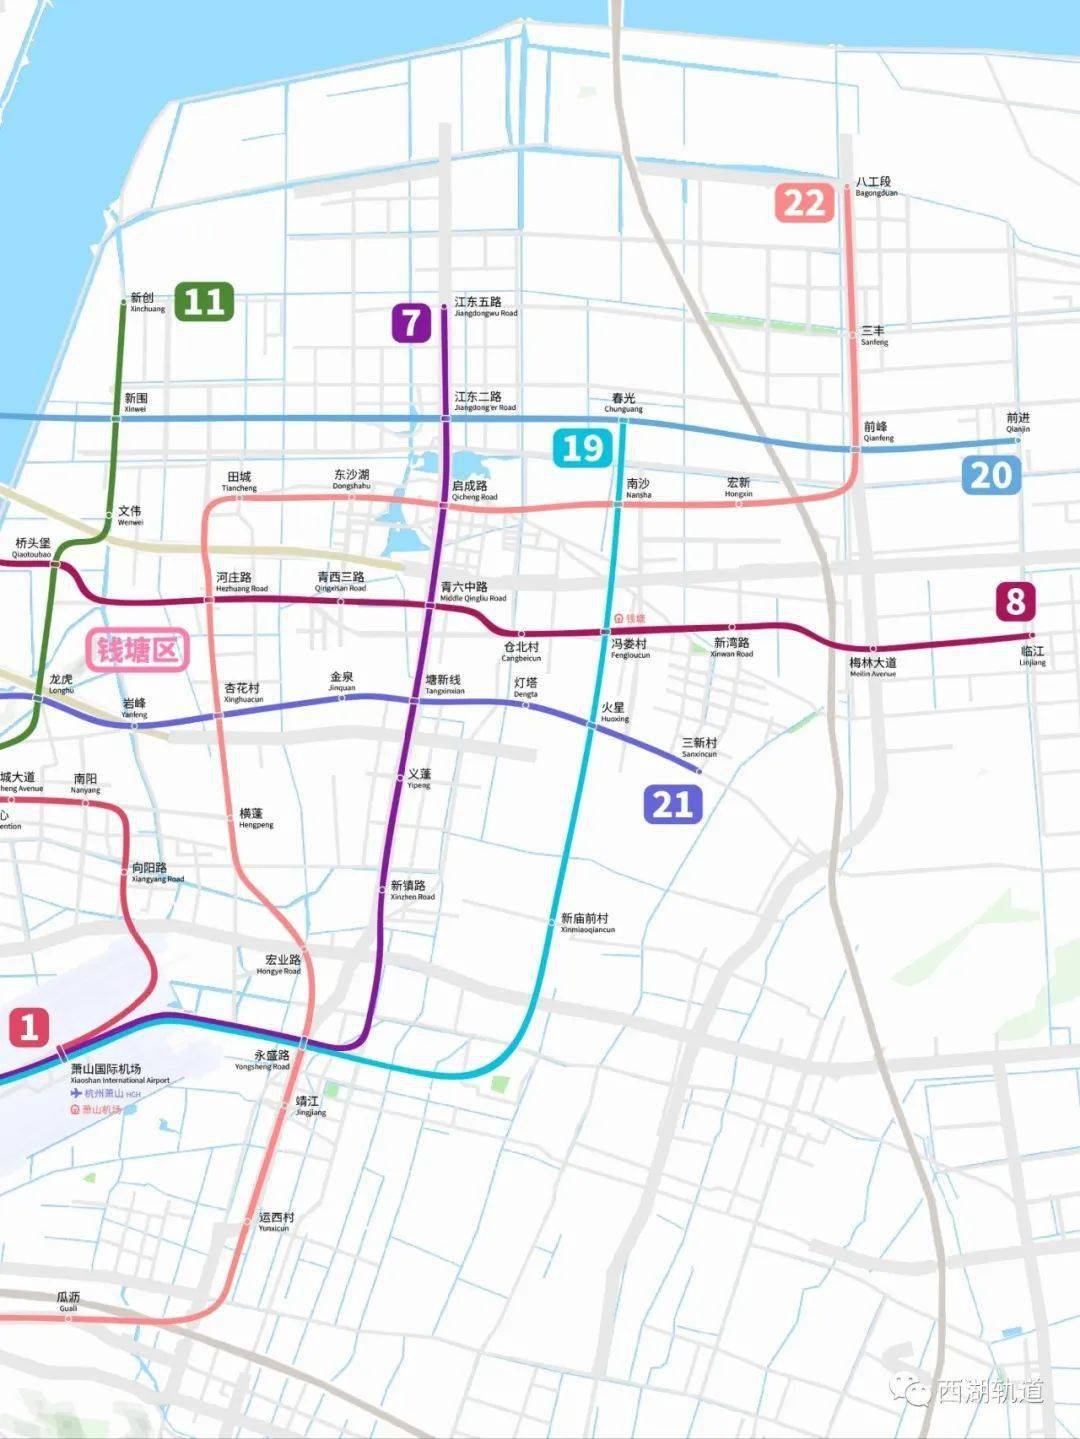 绘制参考图就是这张已经出现过无数次的《杭州市综合交通专项规划